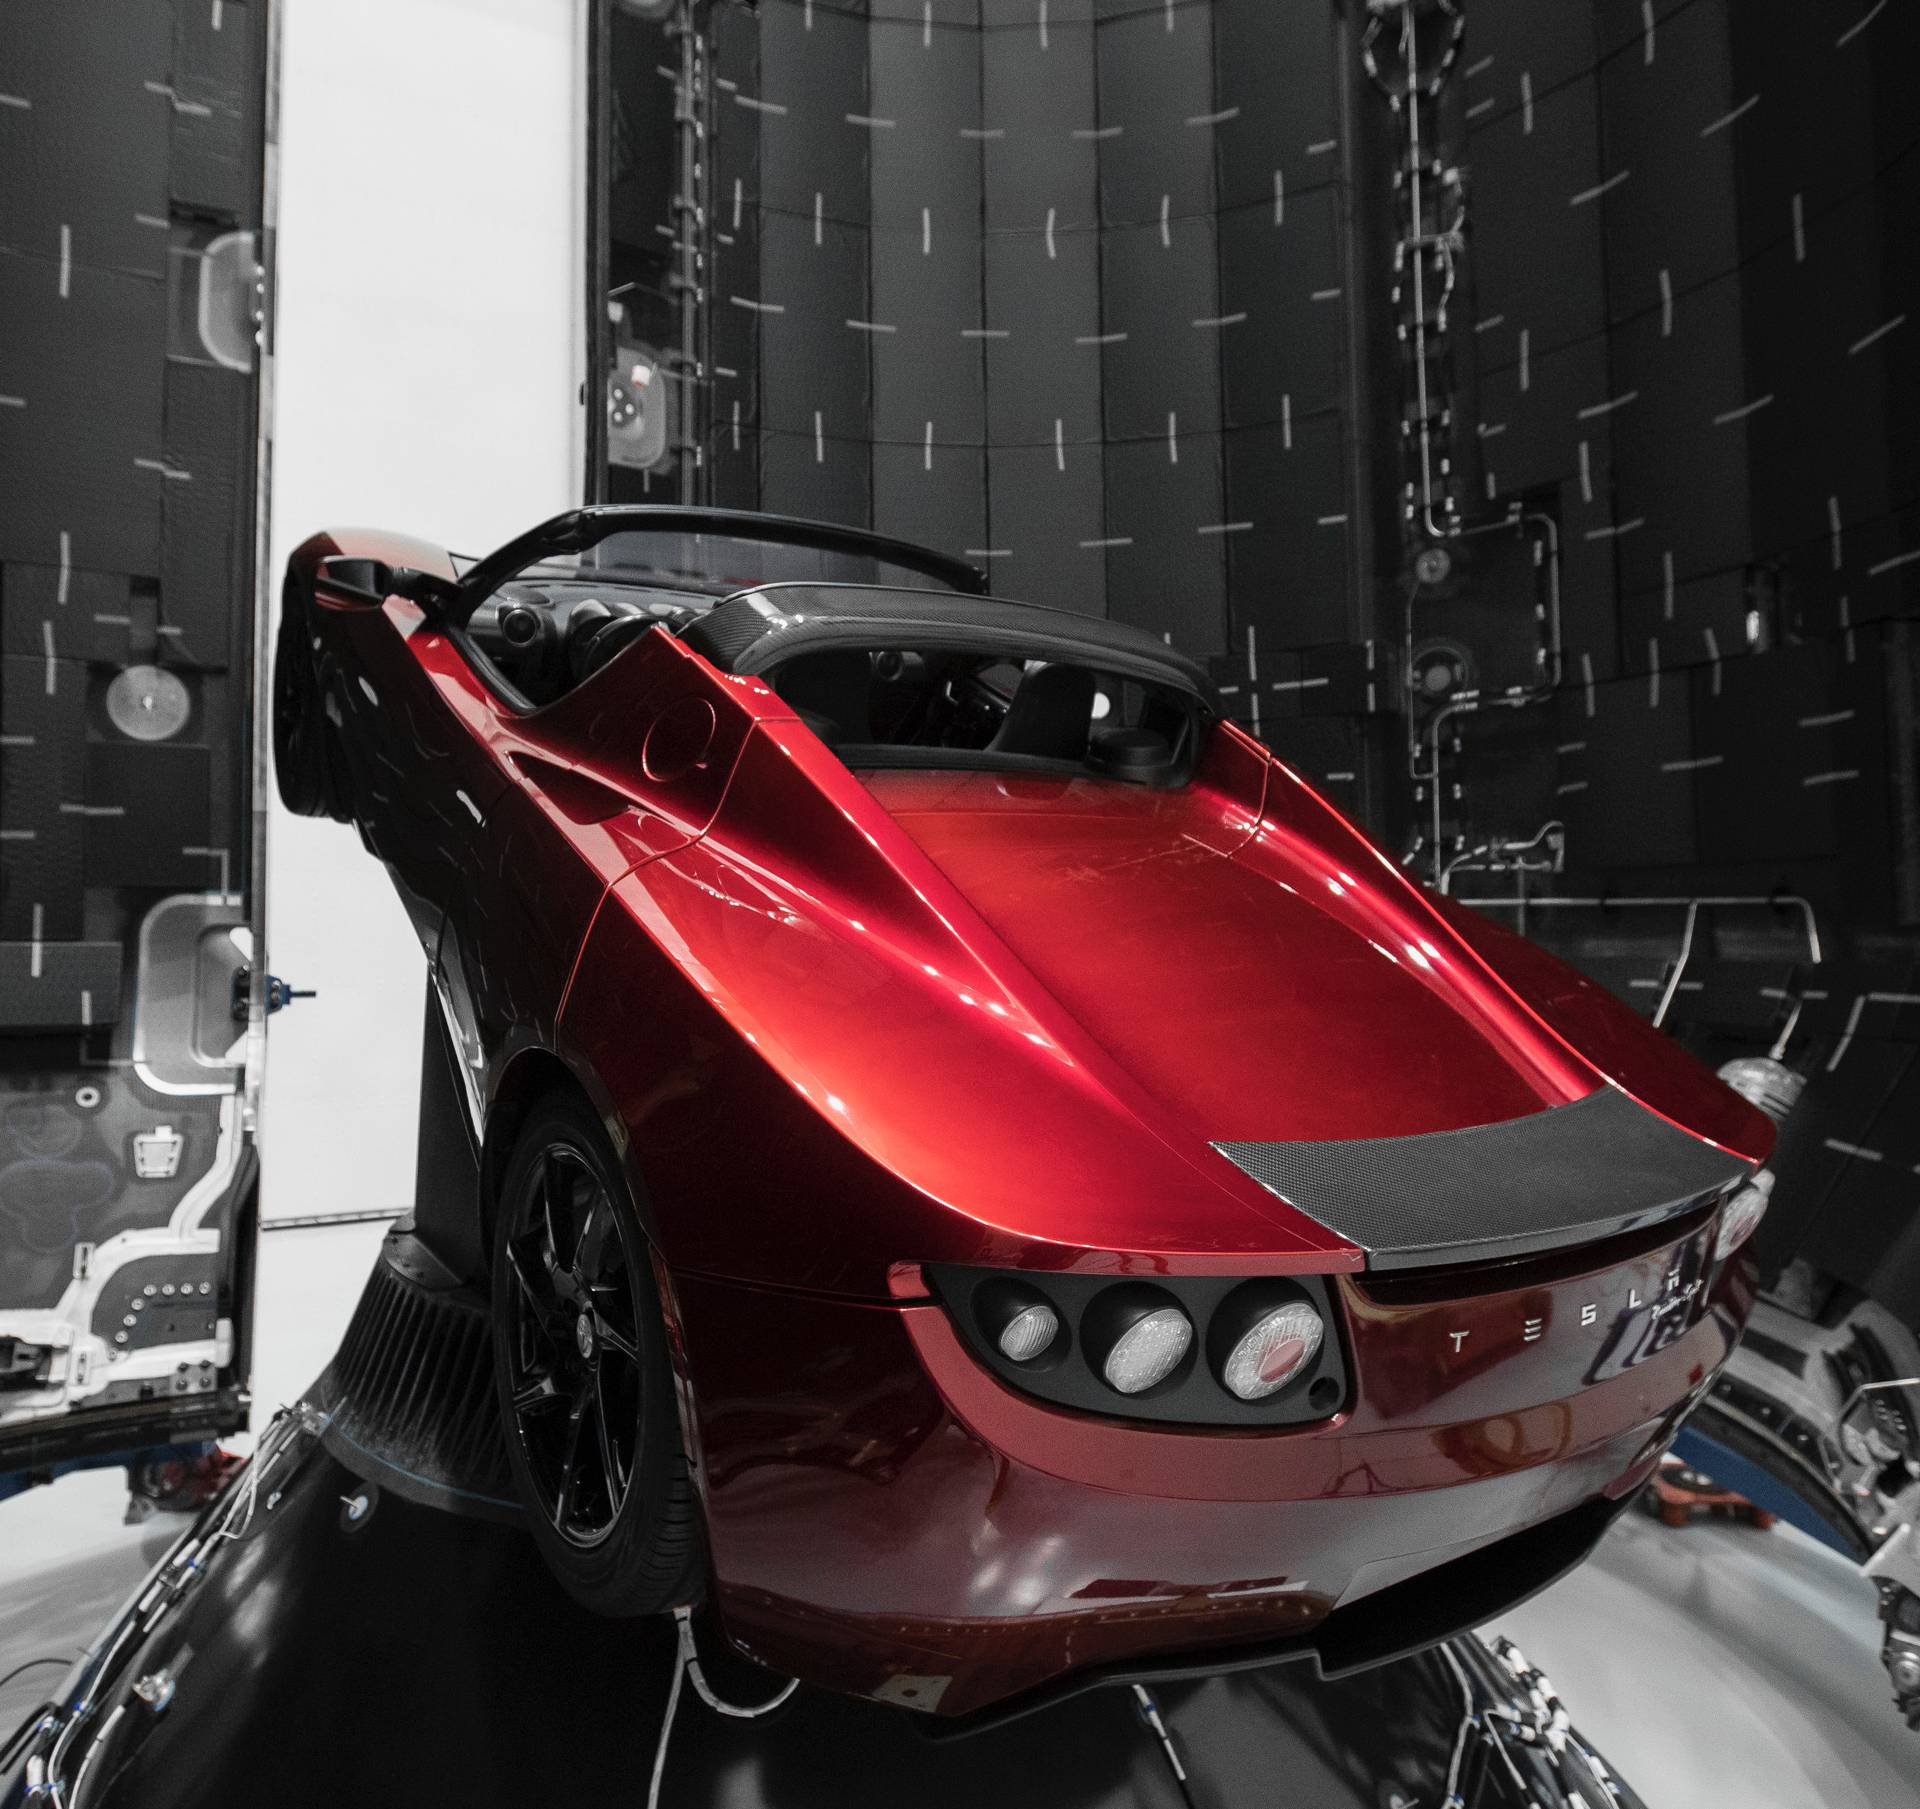 Uspio je: Elon Musk u raketi lansirao auto Tesla u svemir